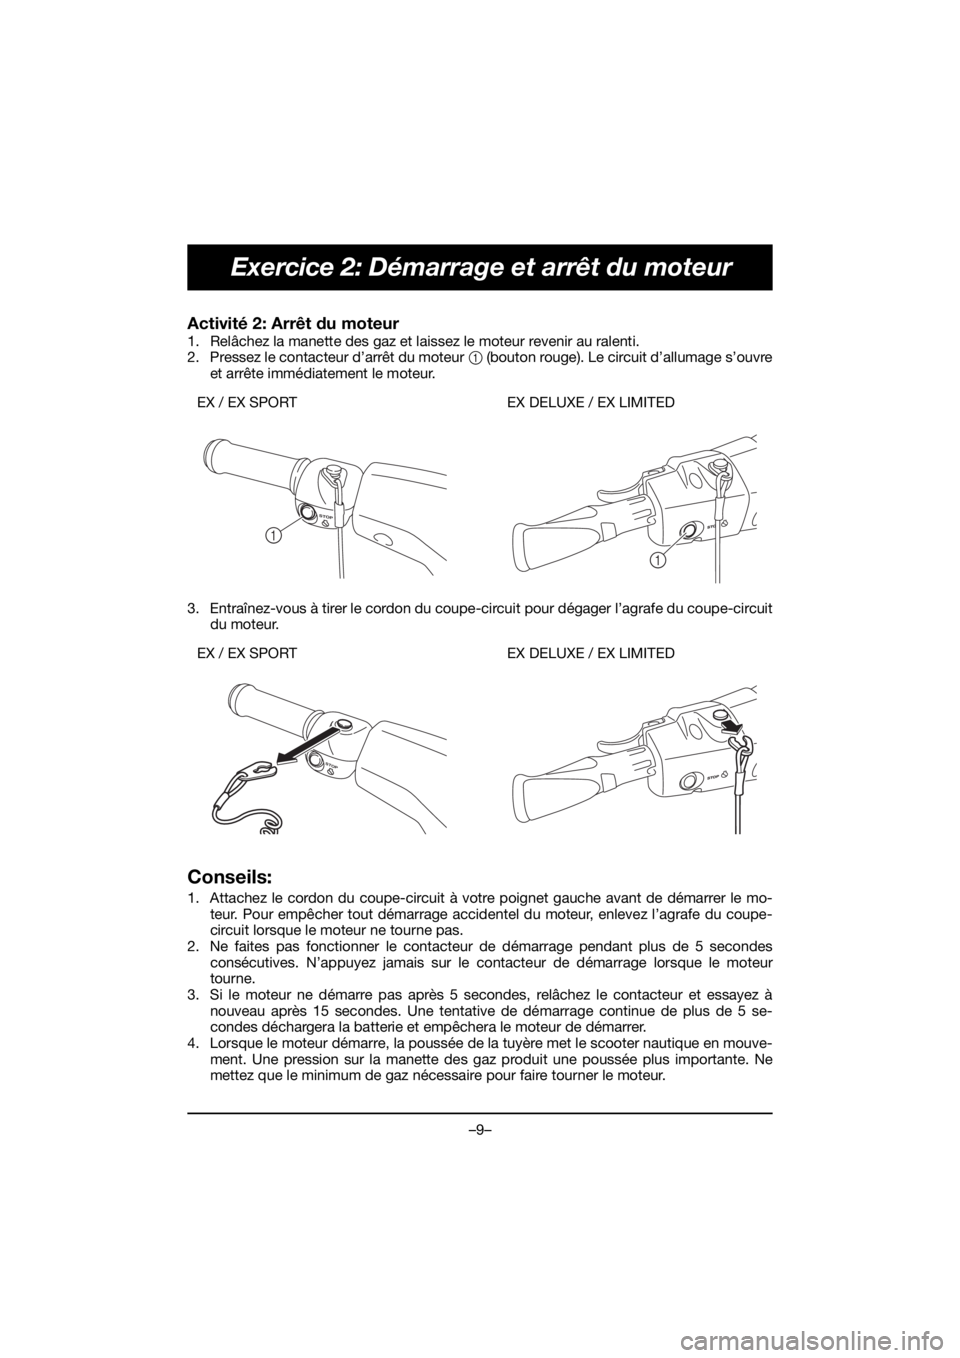 YAMAHA EX 2021  Manuale de Empleo (in Spanish) –9–
Exercice 2: Démarrage et arrêt du moteur
Activité 2: Arrêt du moteur 
1. Relâchez la manette des gaz et laissez le moteur revenir au ralenti. 
2. Pressez le contacteur d’arrêt du moteu